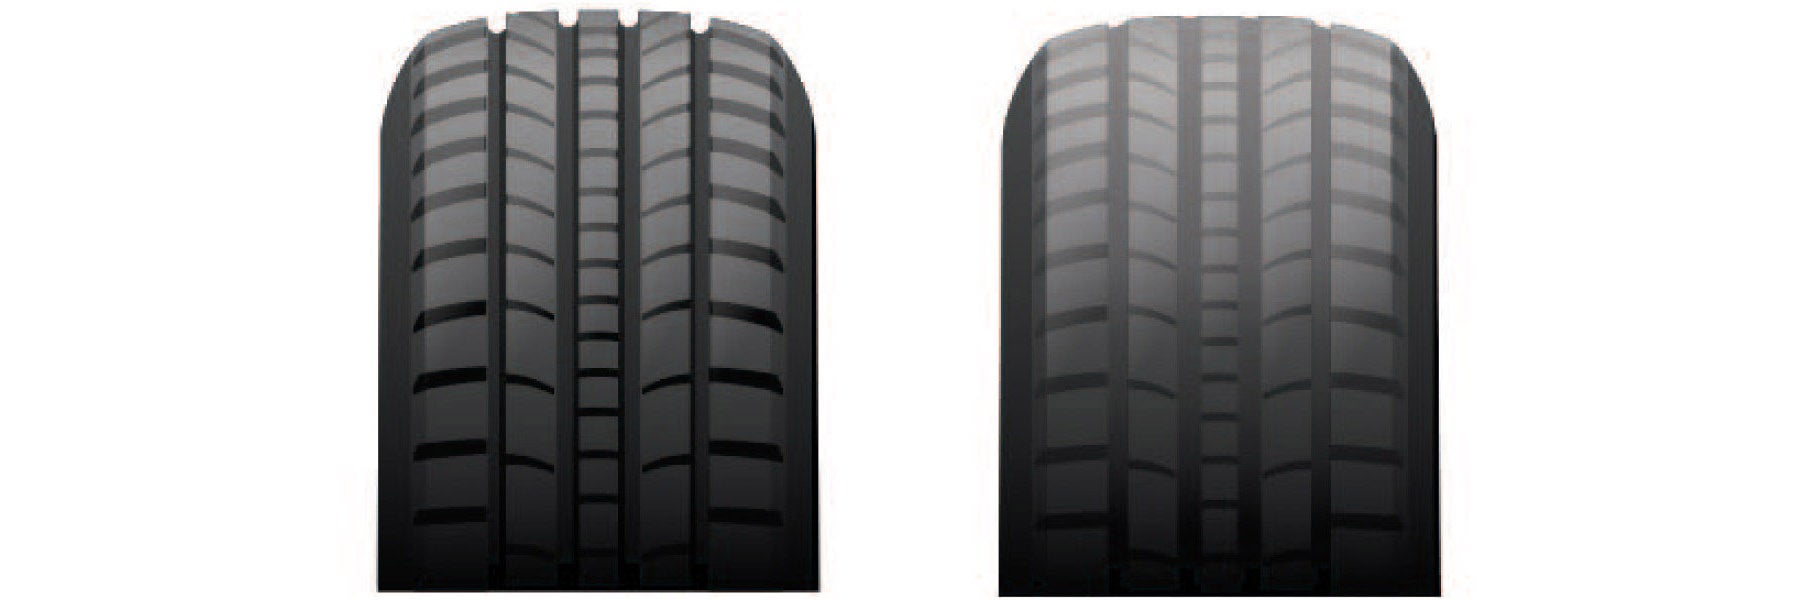 Tire tread depth comparison at DeMontrond Kia in Houston TX